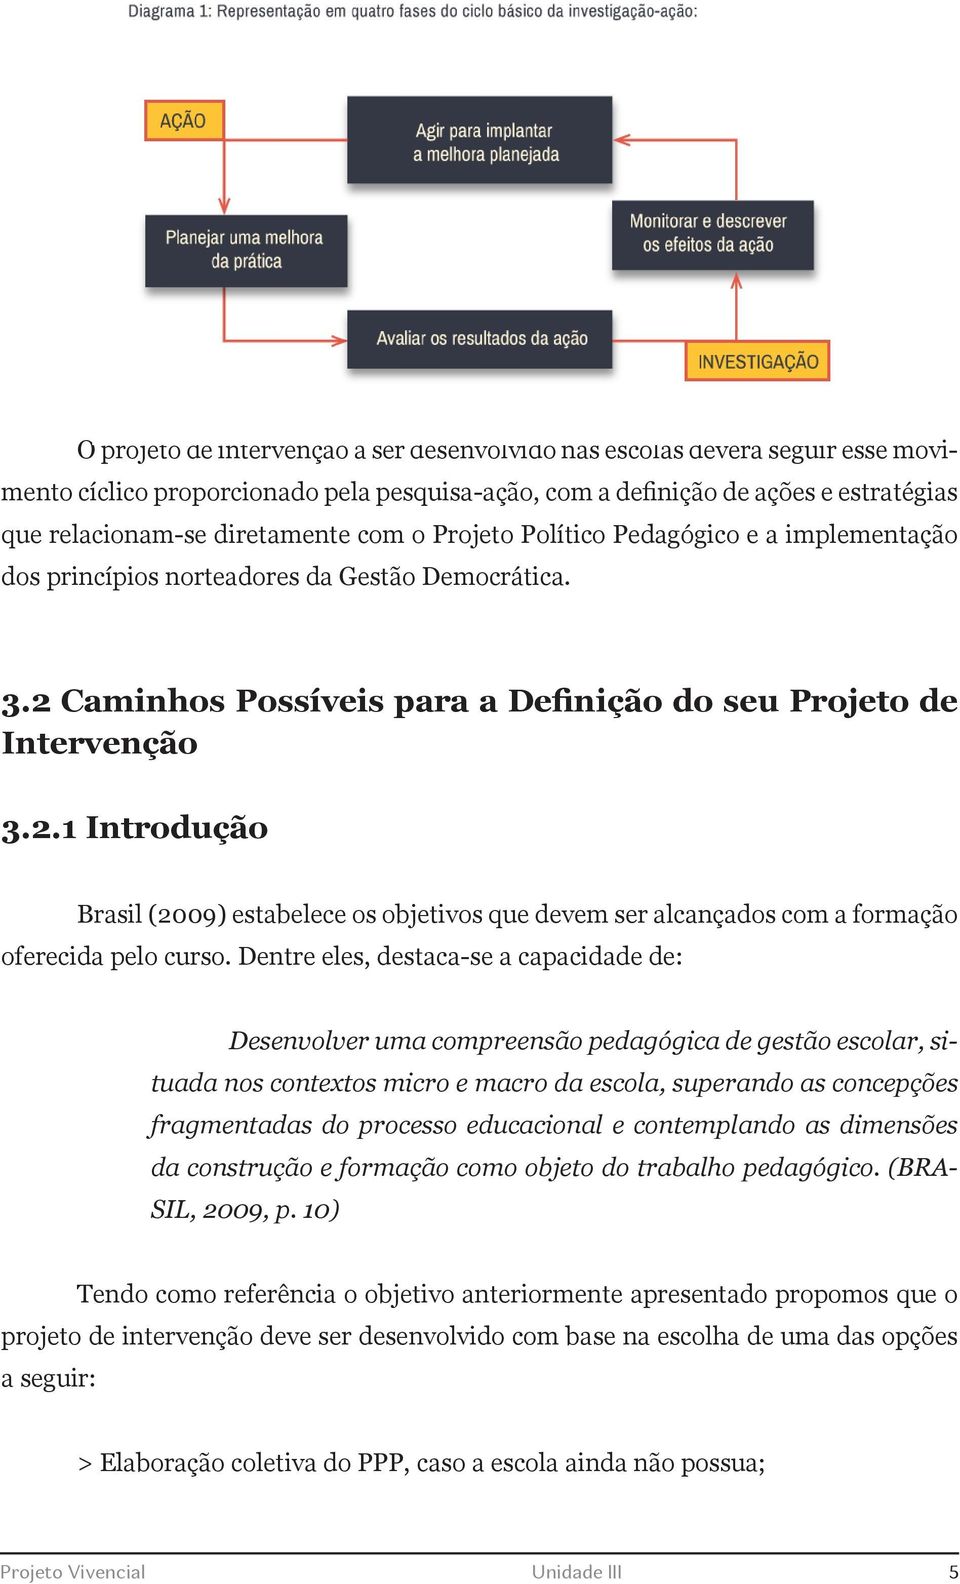 Caminhos Possíveis para a Definição do seu Projeto de Intervenção 3.2.1 Introdução Brasil (2009) estabelece os objetivos que devem ser alcançados com a formação oferecida pelo curso.